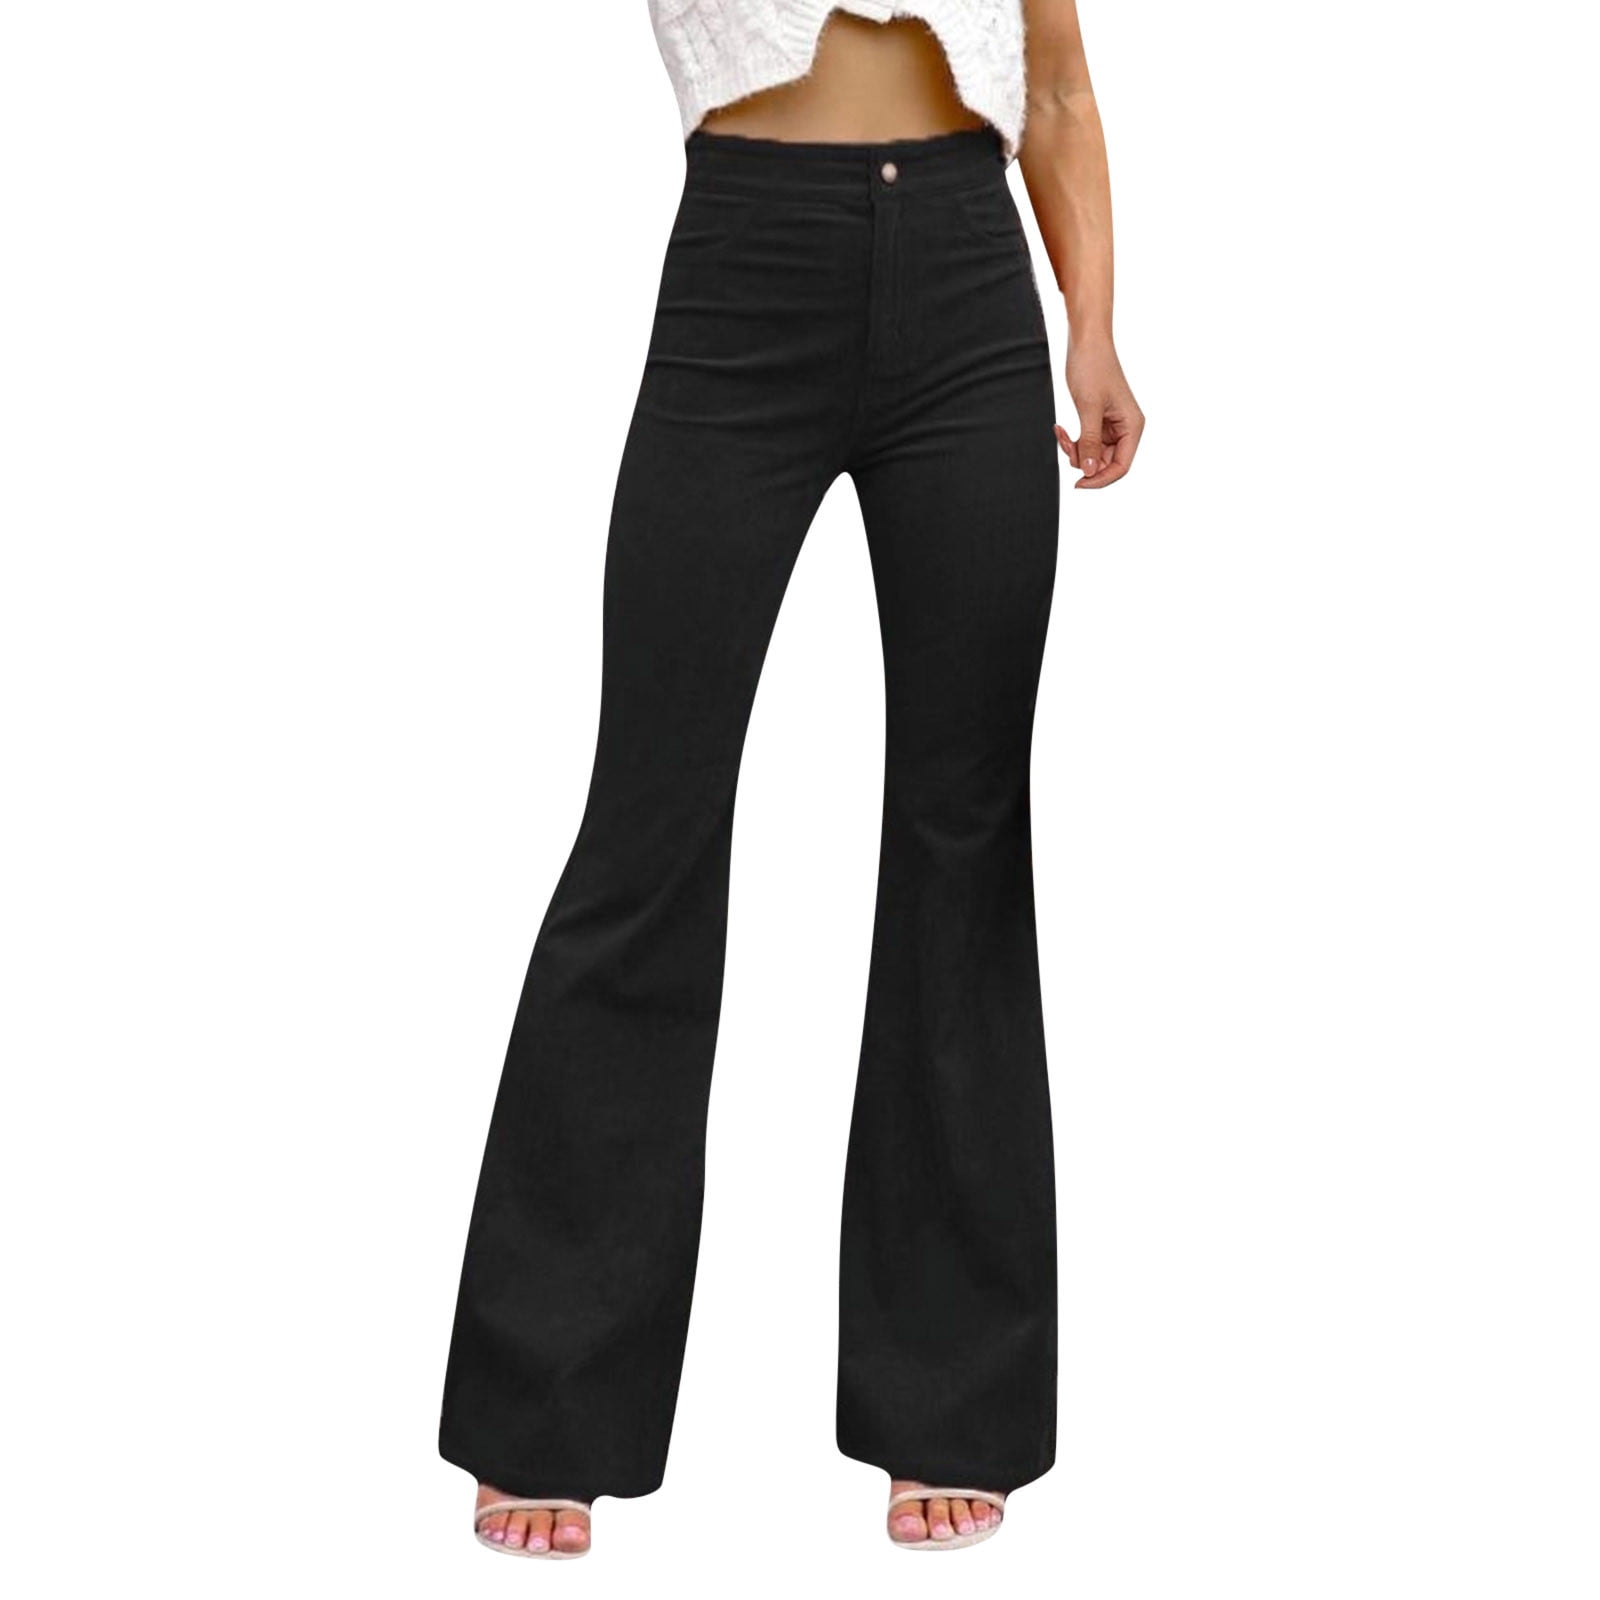 2DXuixsh Travel Pants for Women Women Solid Color Pant Trouser